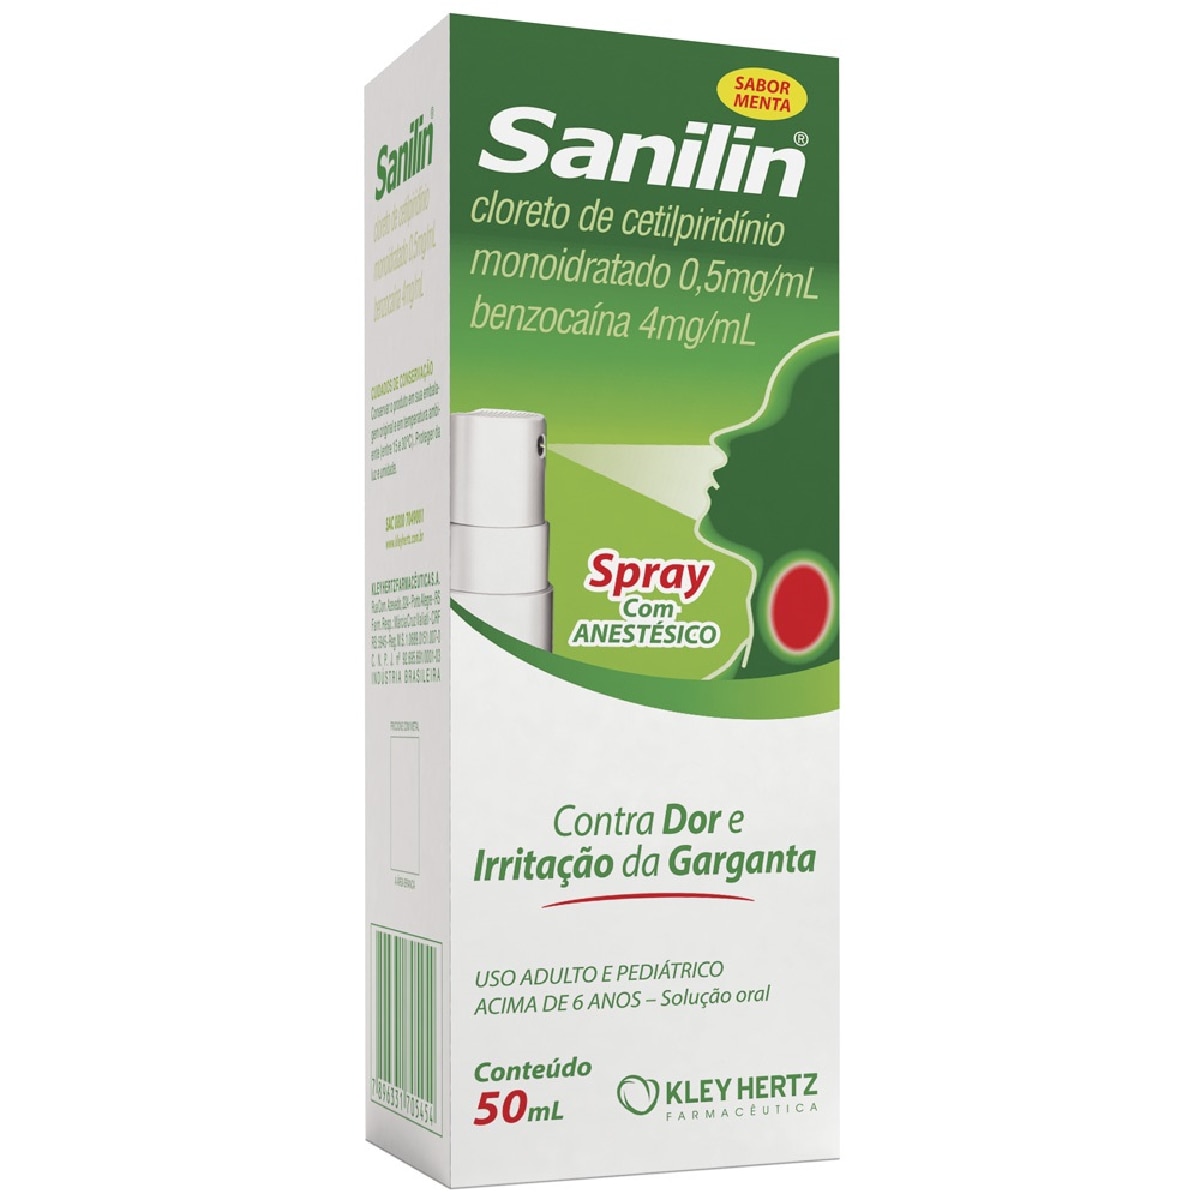 Sanilin Solucao Oral com Anestesico Spray 50ml